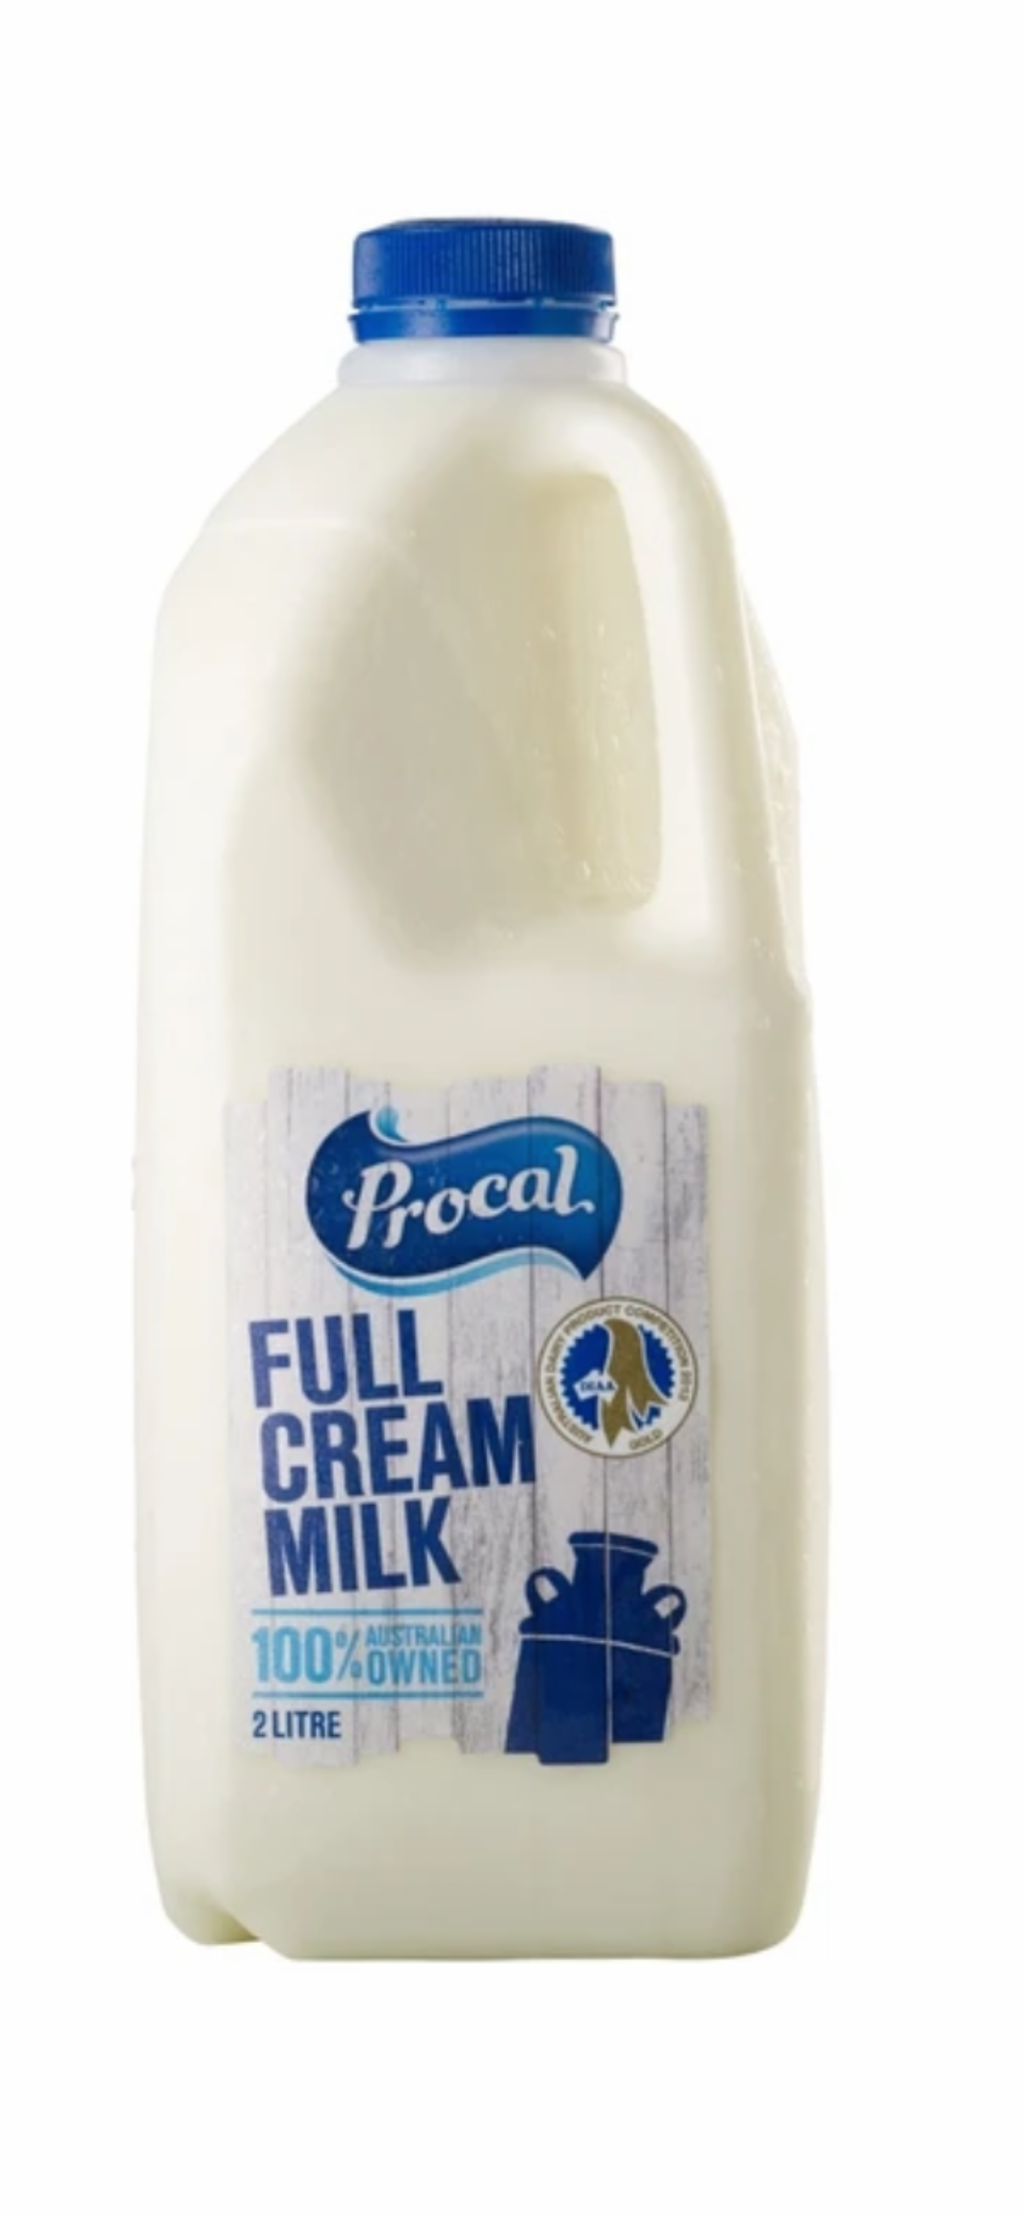 Procal full cream milk 2lt